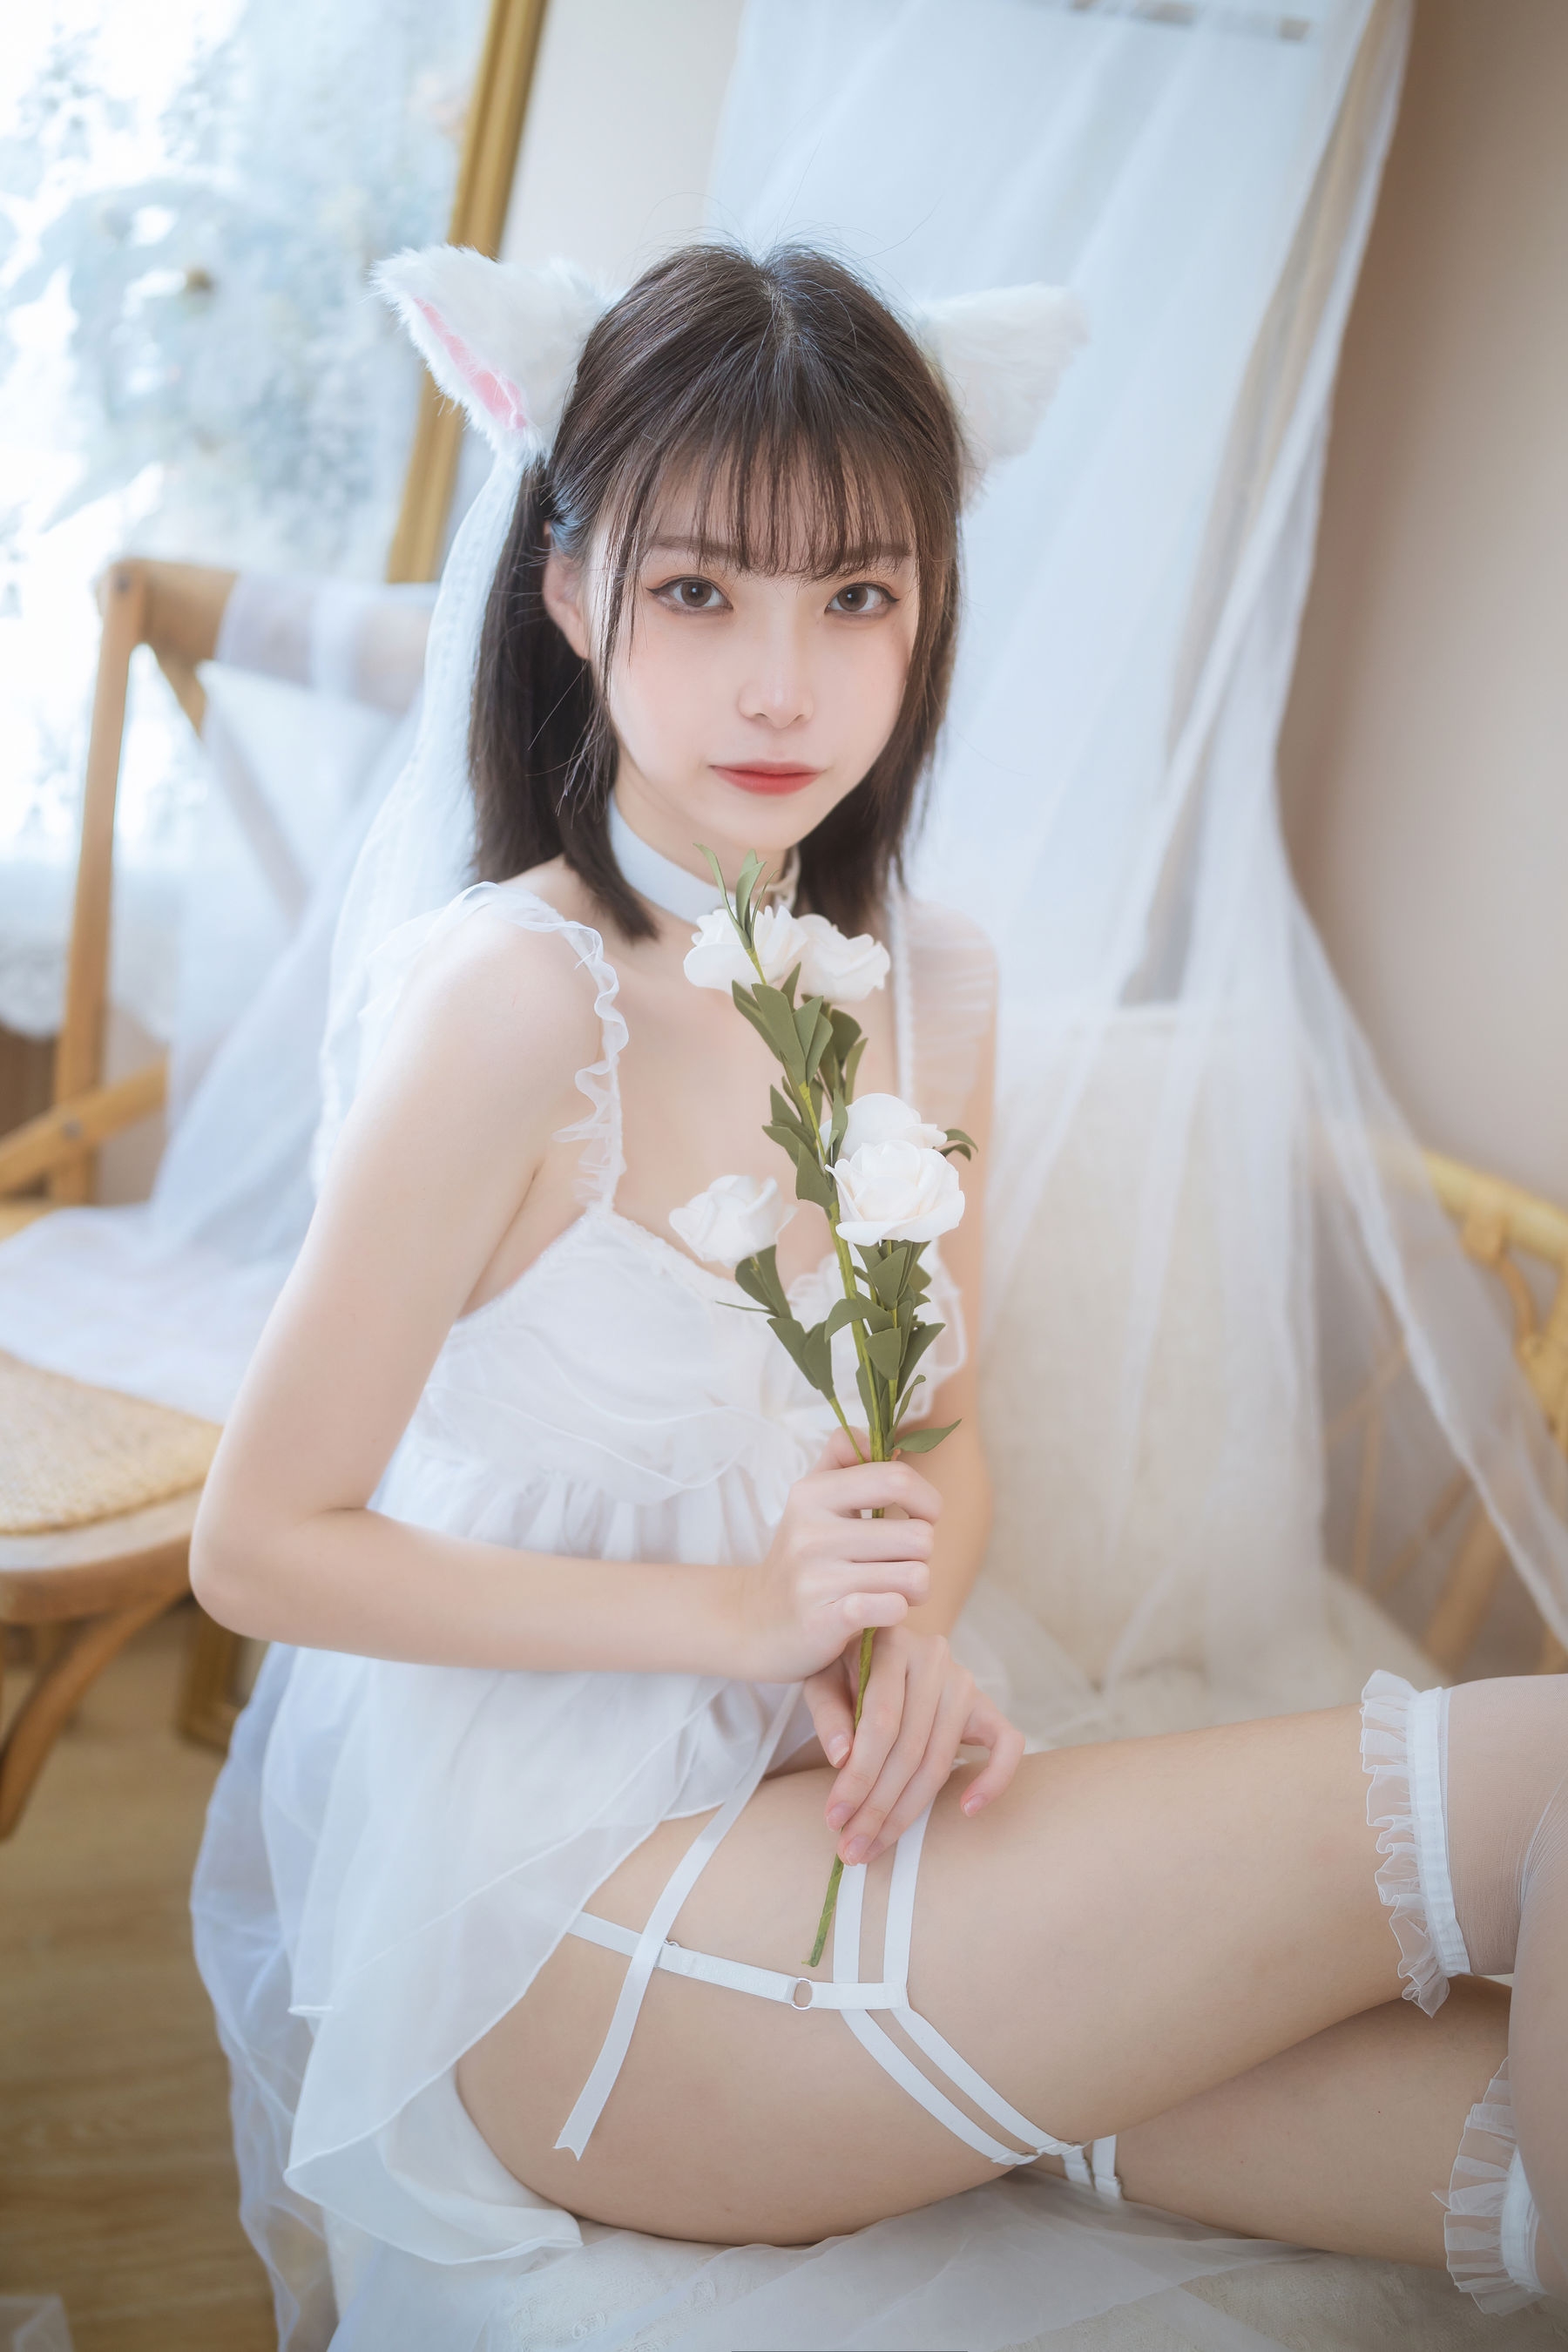 [福利COS] 许岚 - 少女白色裙